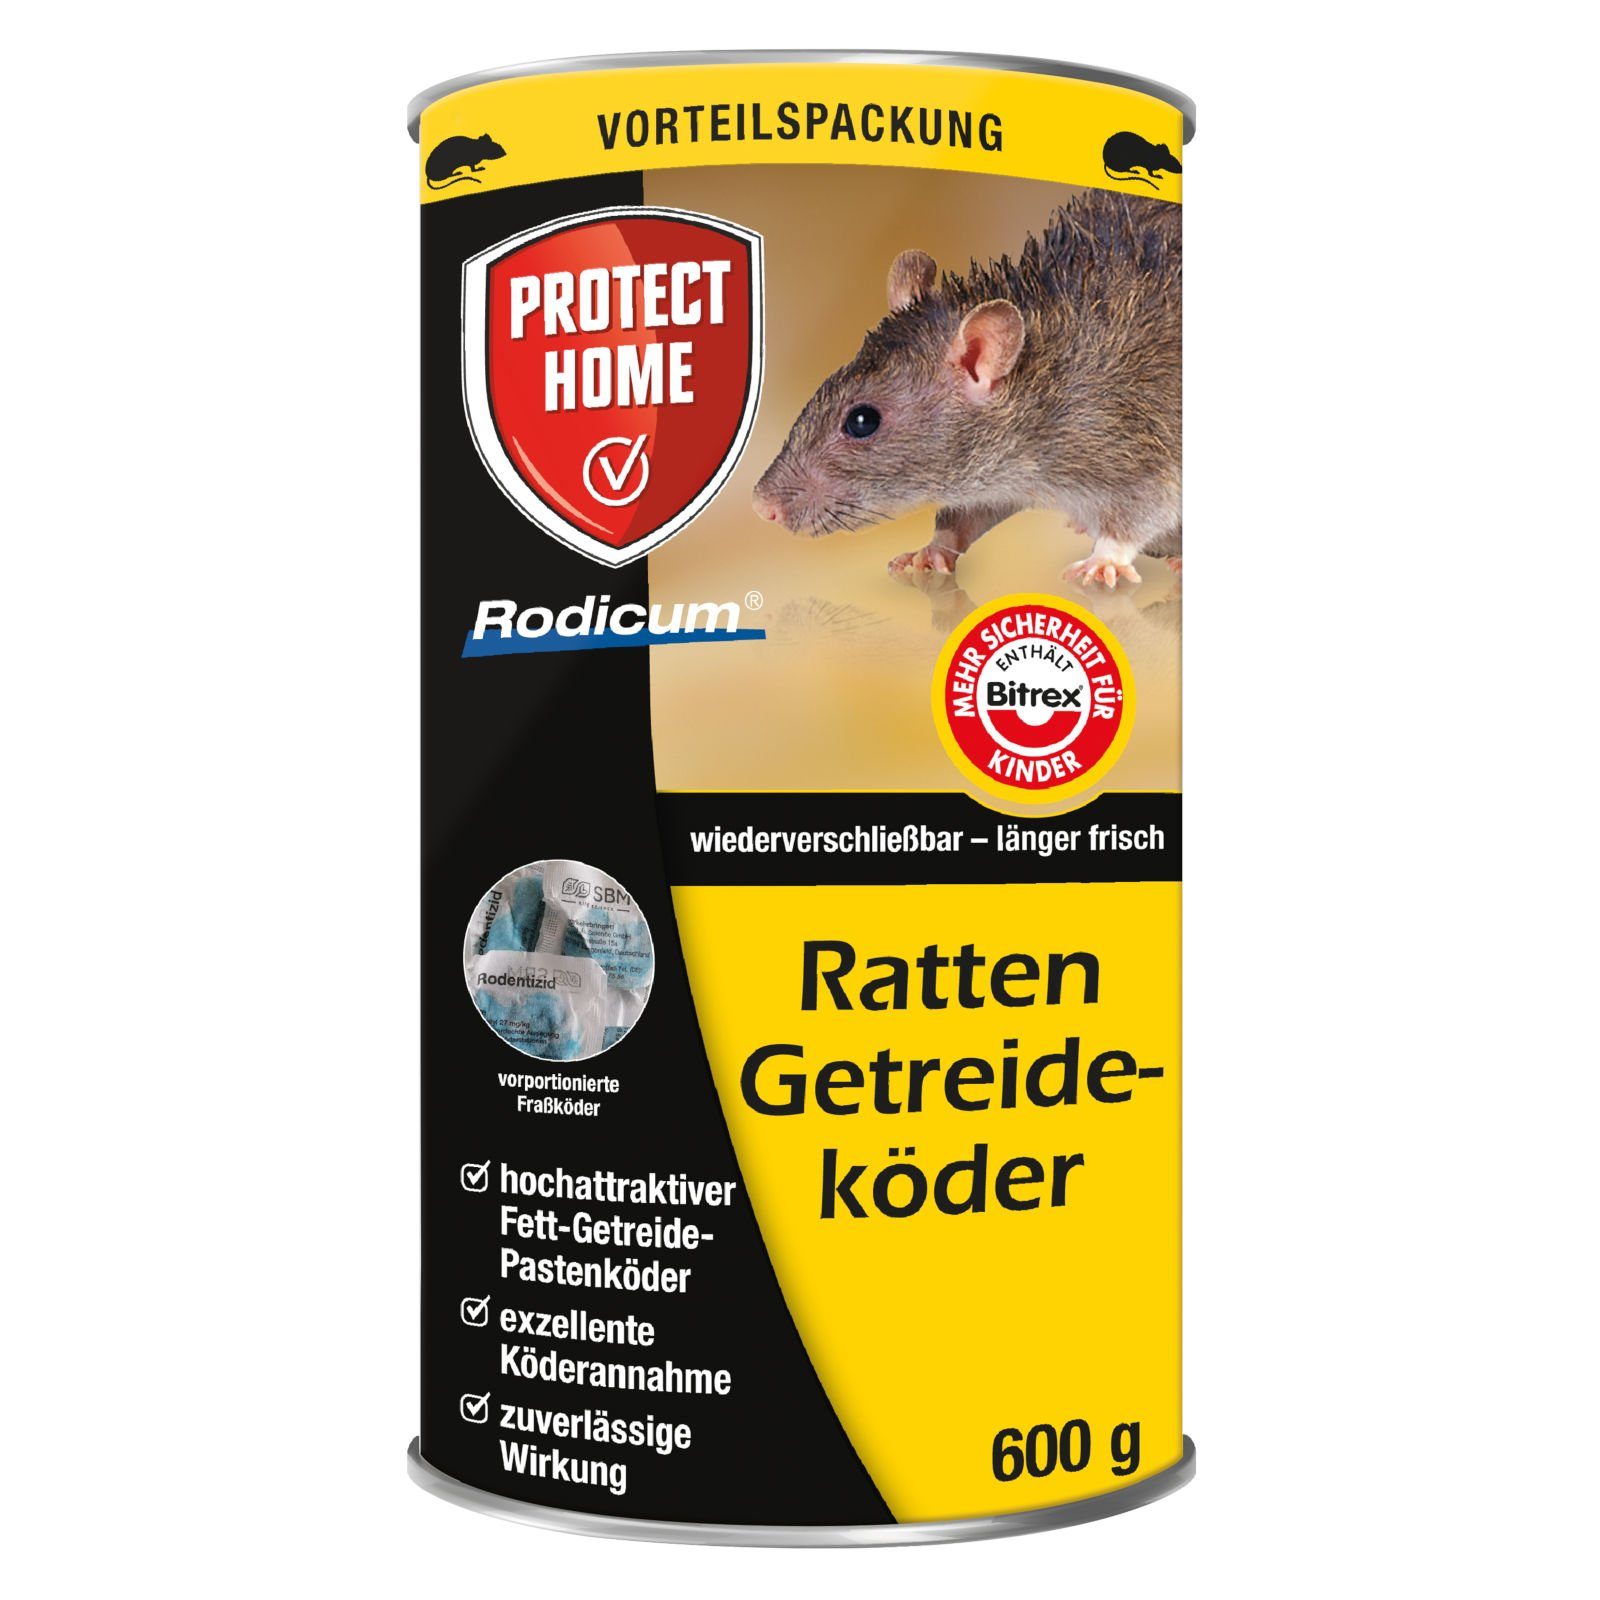 Protect Home Gift-Rattenköder Protect Home Rodicum Ratten Getreideköder - 600 g